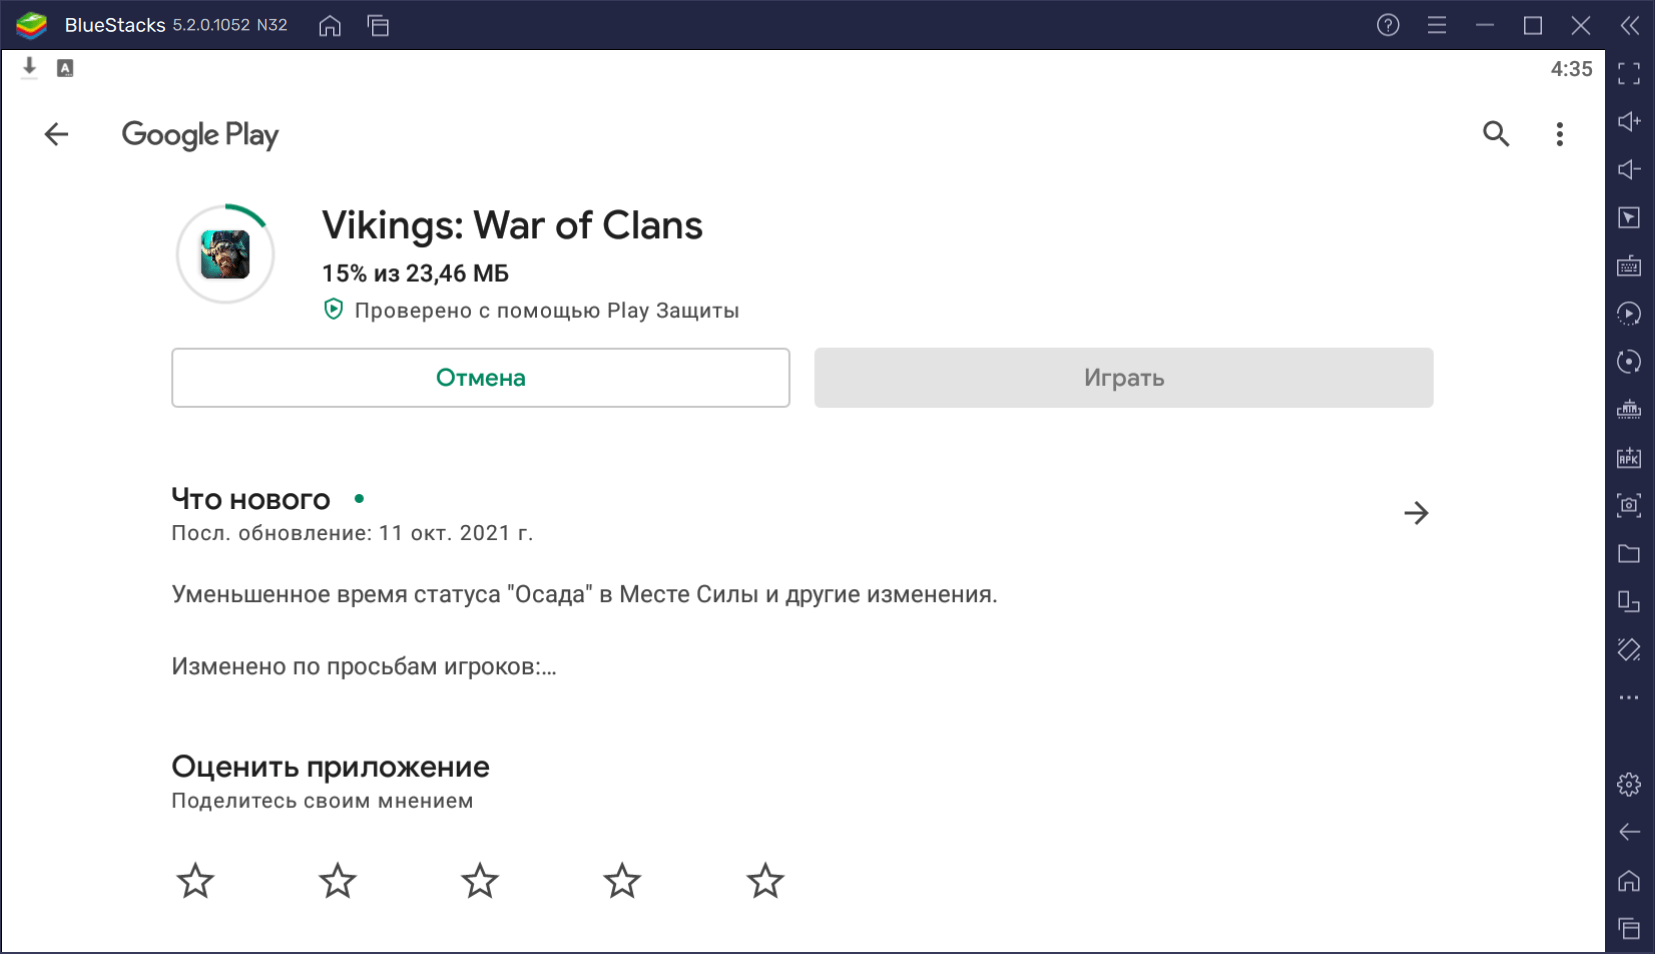 Как скачать Vikings: War of Clans на ПК с помощью BlueStacks?